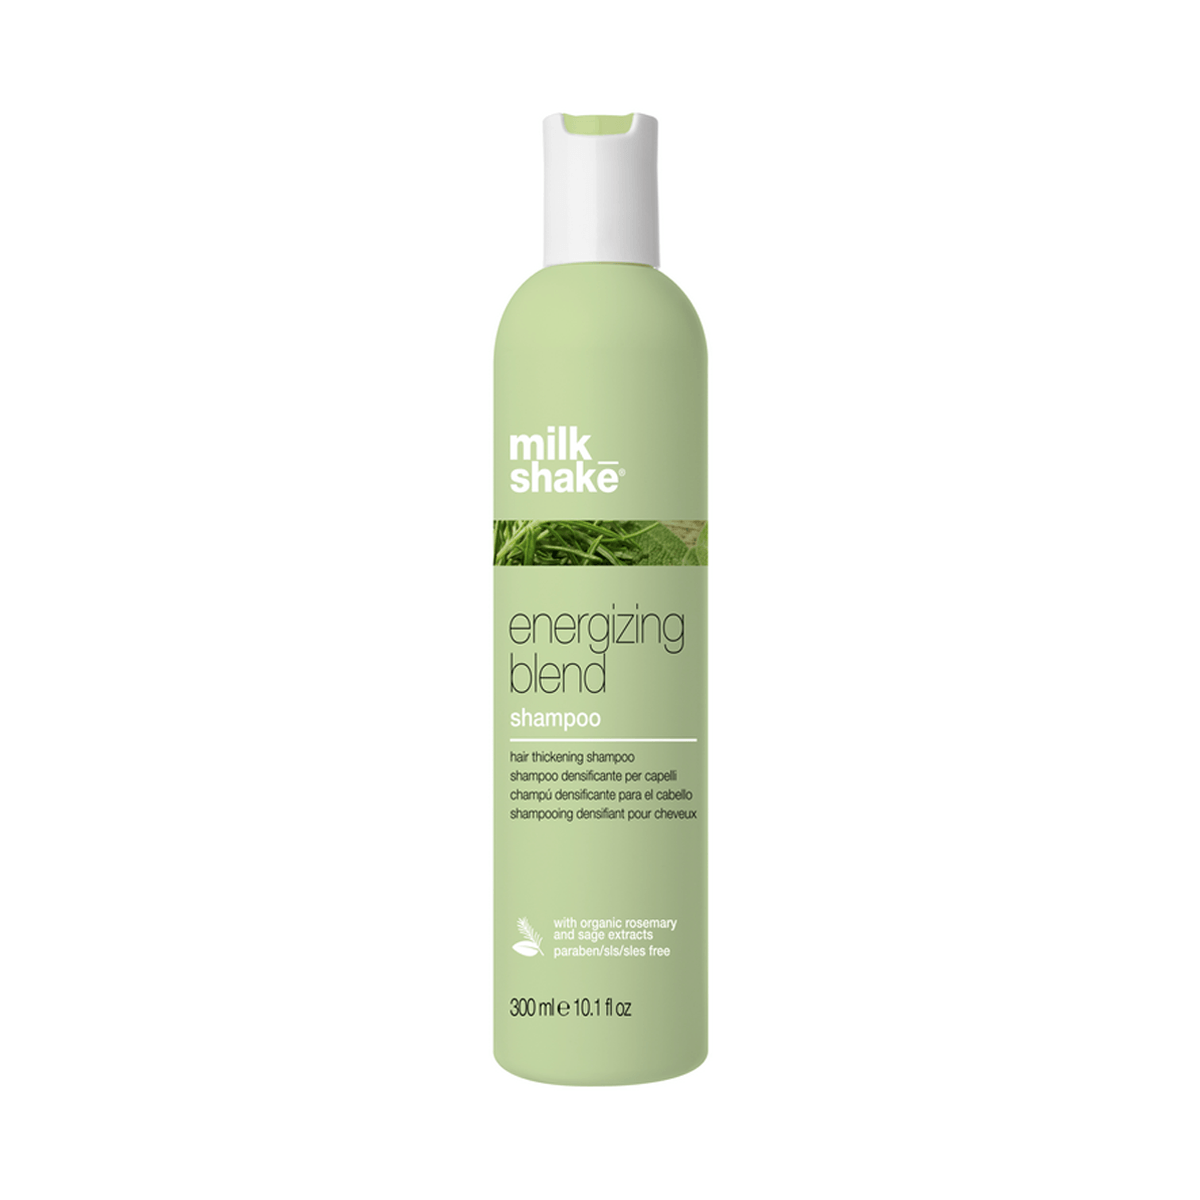 Milk_shake Energizing blend shampoo